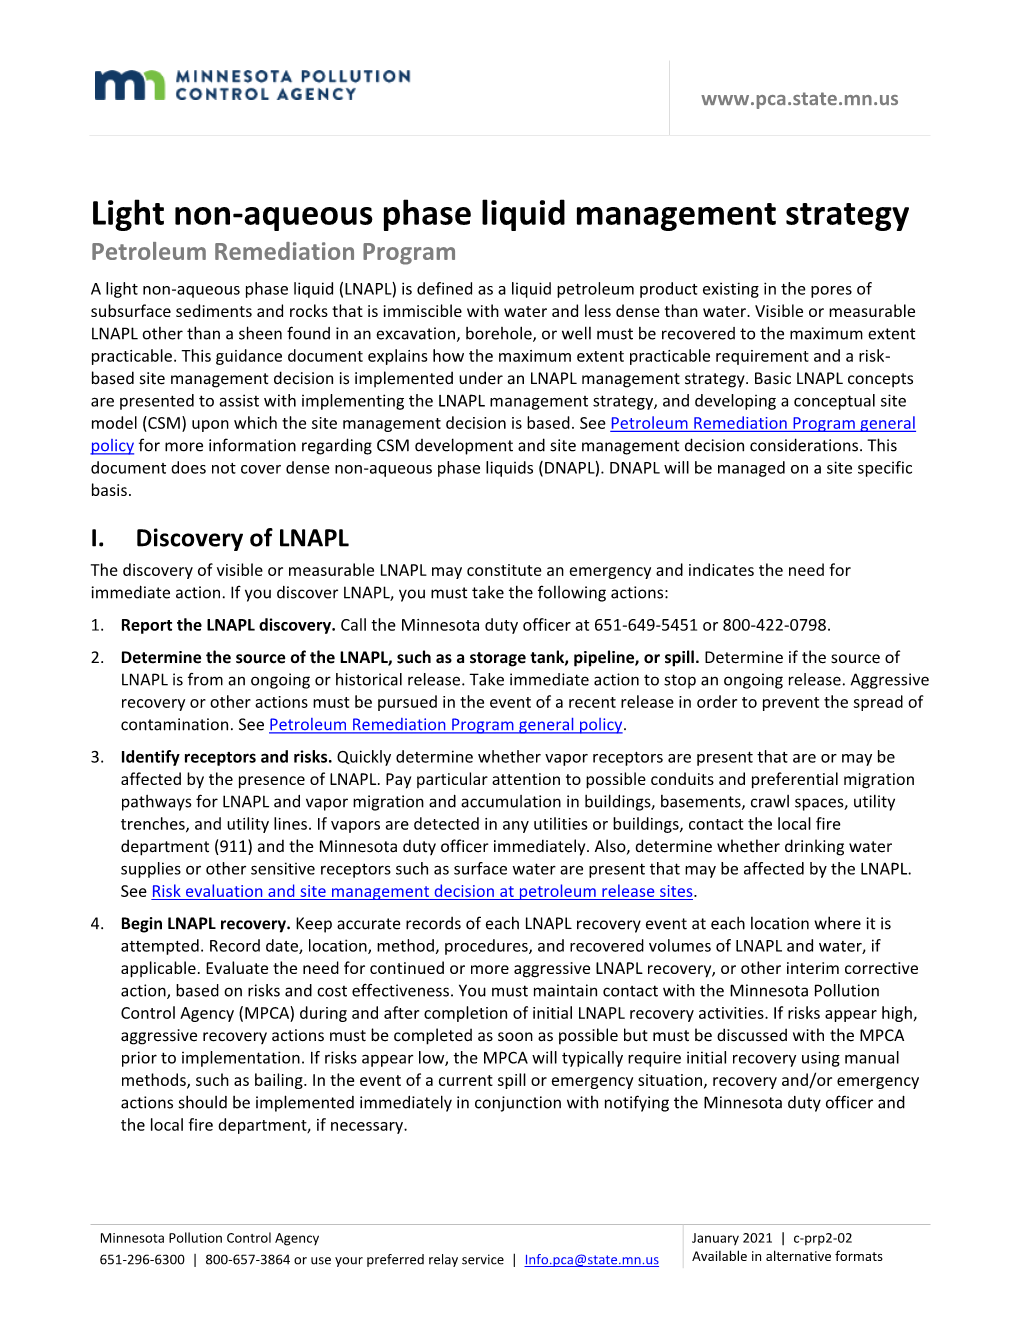 2-02 Light Non-Aqueous Phase Liquid Management Strategy (C-Prp2-02)